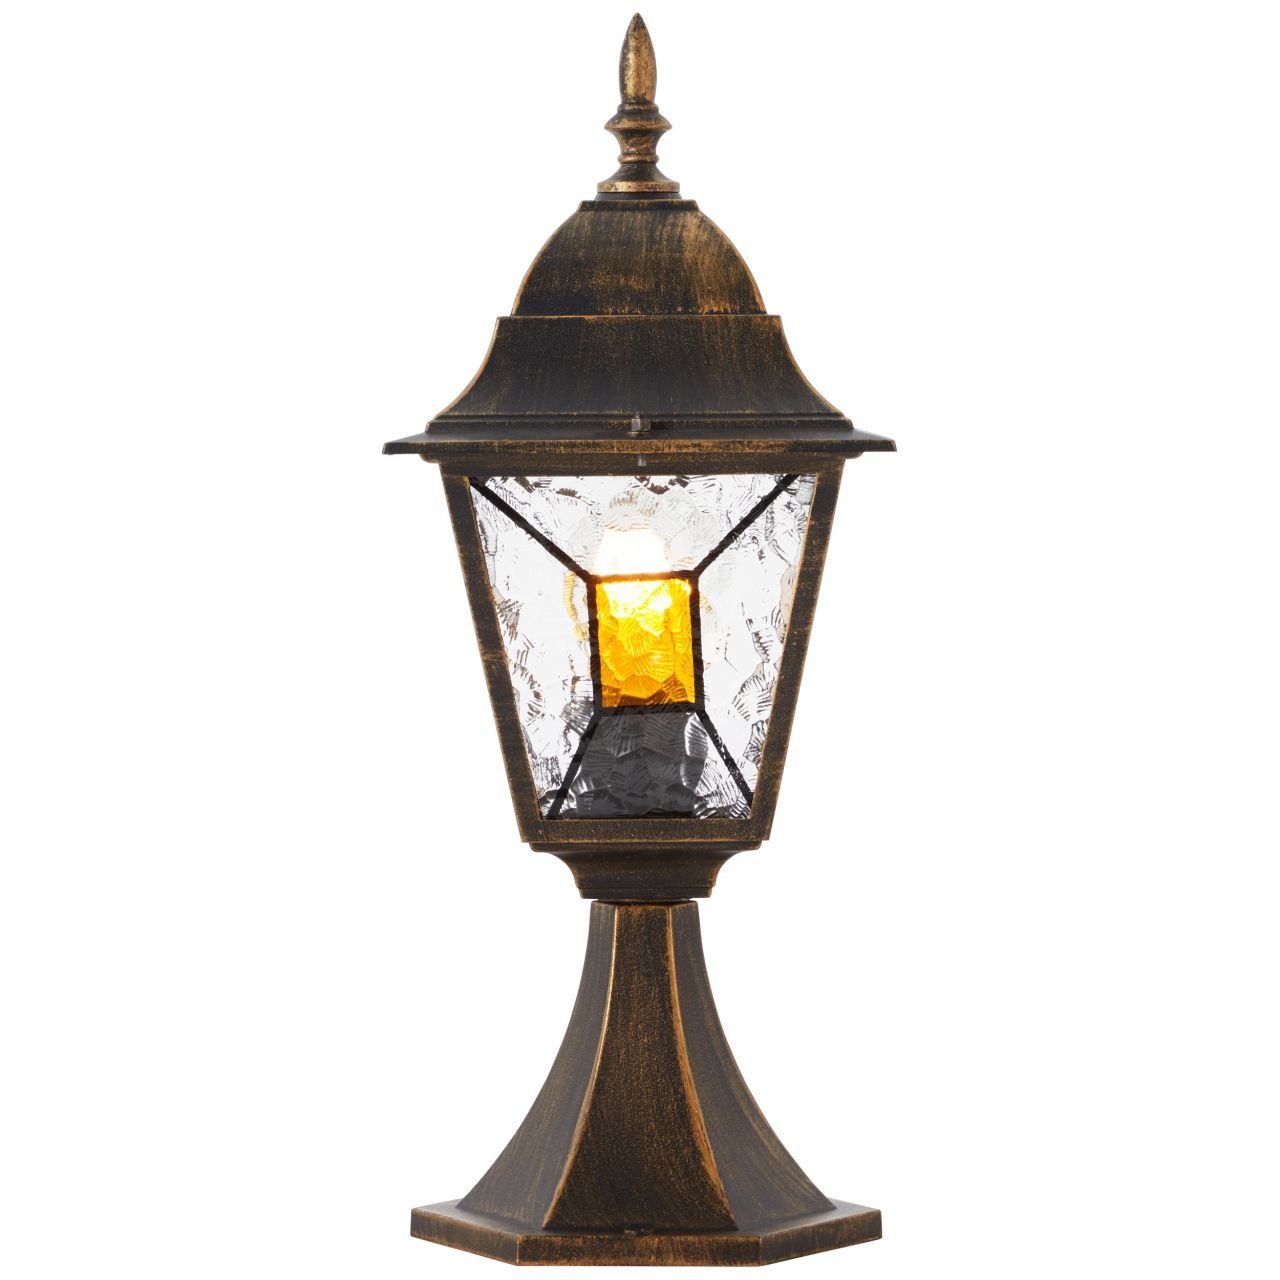 Brilliant Außen-Stehlampe Janel, Janel Außensockelleuchte 44cm schwarz gold 1x A60, E27, 60W, geeigne